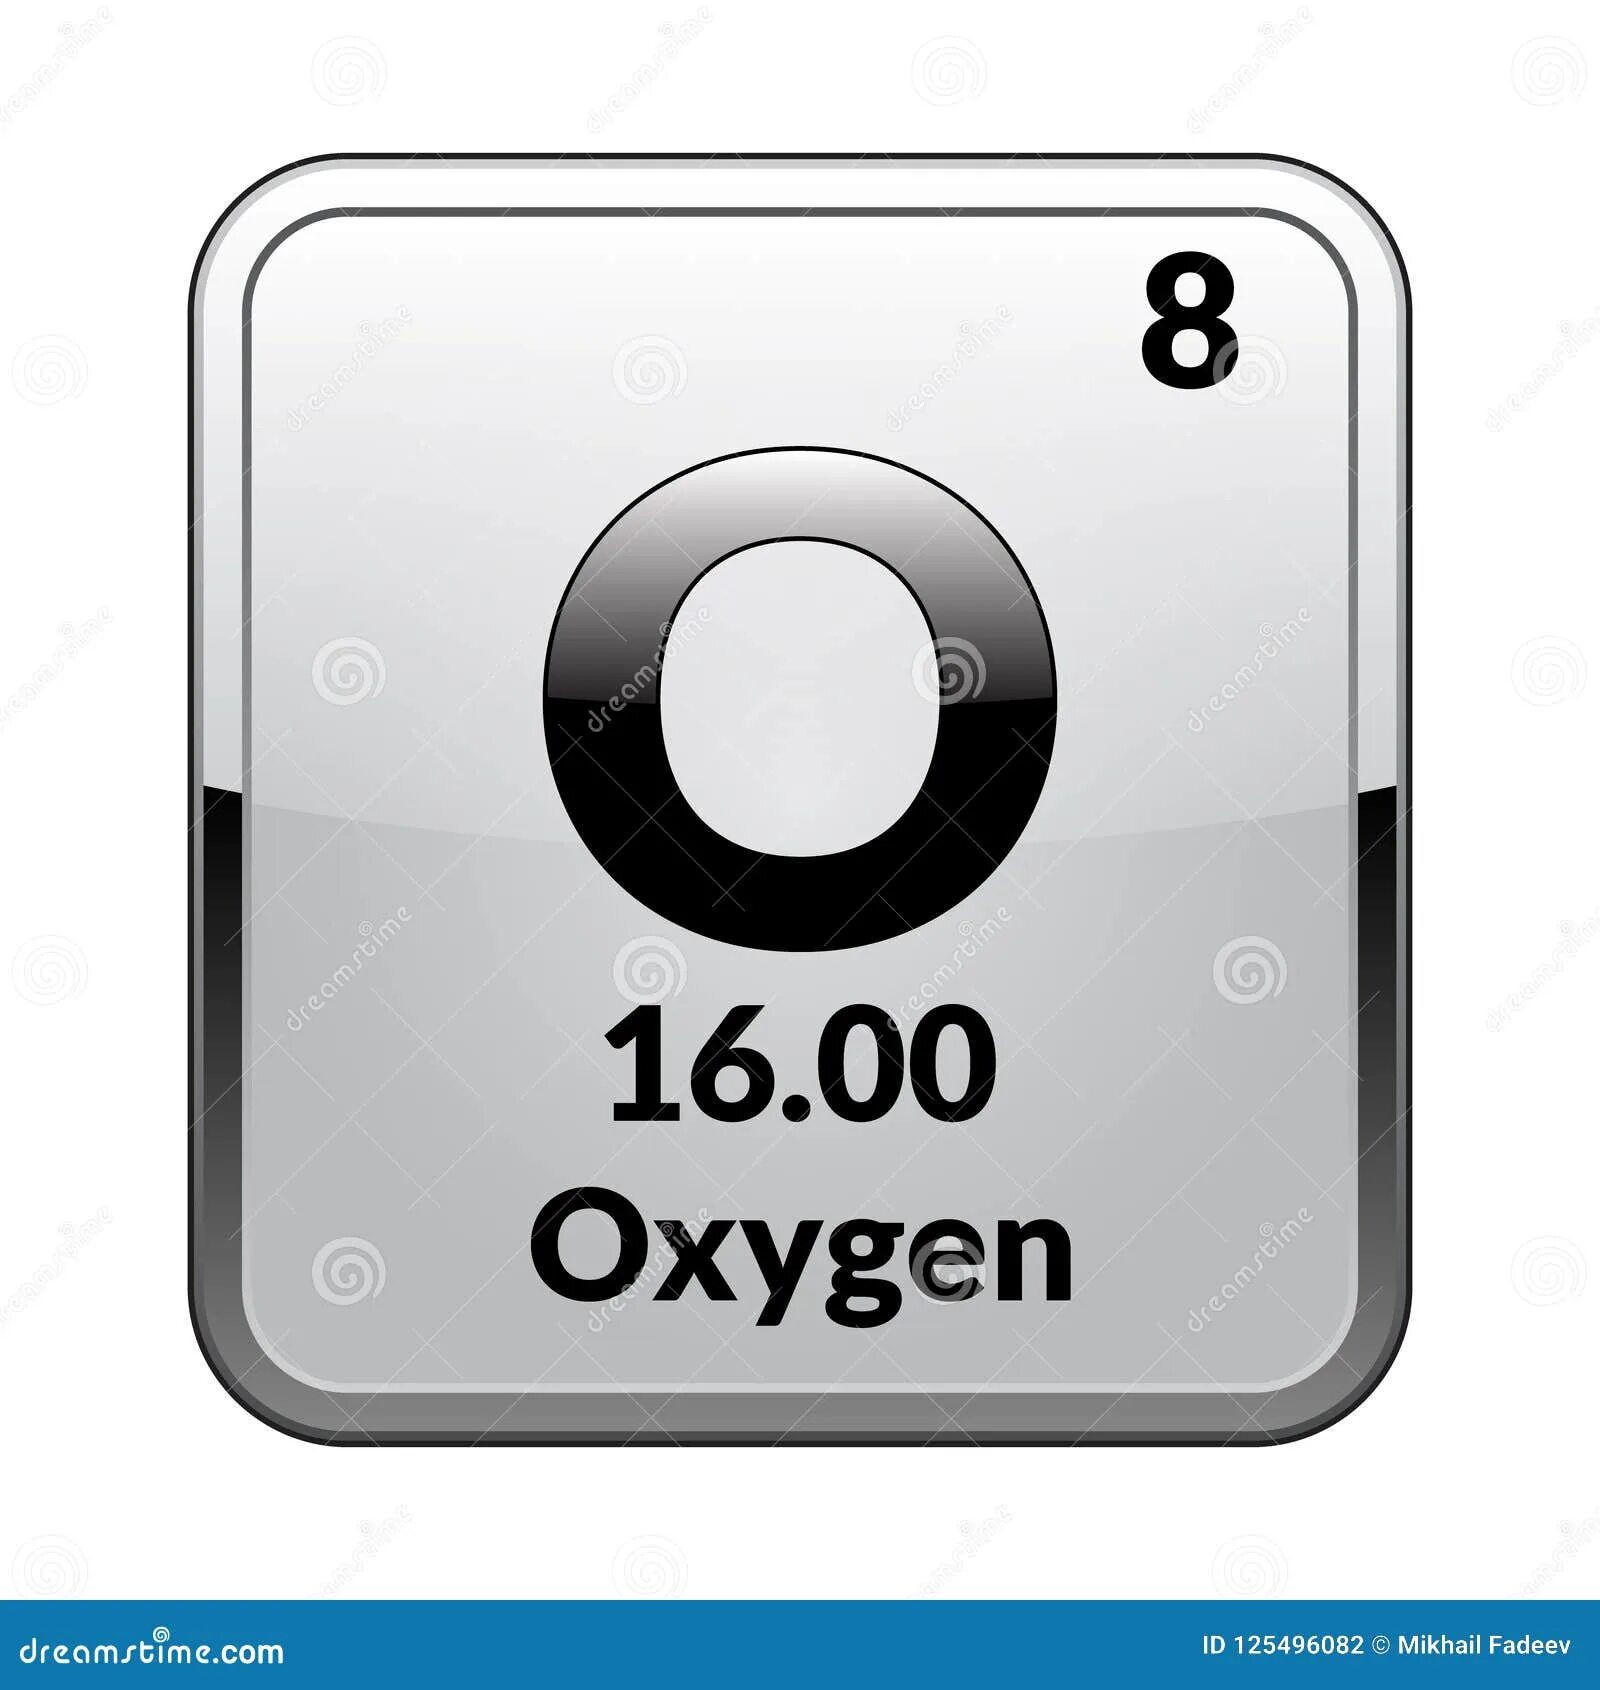 Символ элемента кислород. Химический знак кислорода. Химический символ кислорода. Кислород символ химического элемента. Кислород элемент таблицы.